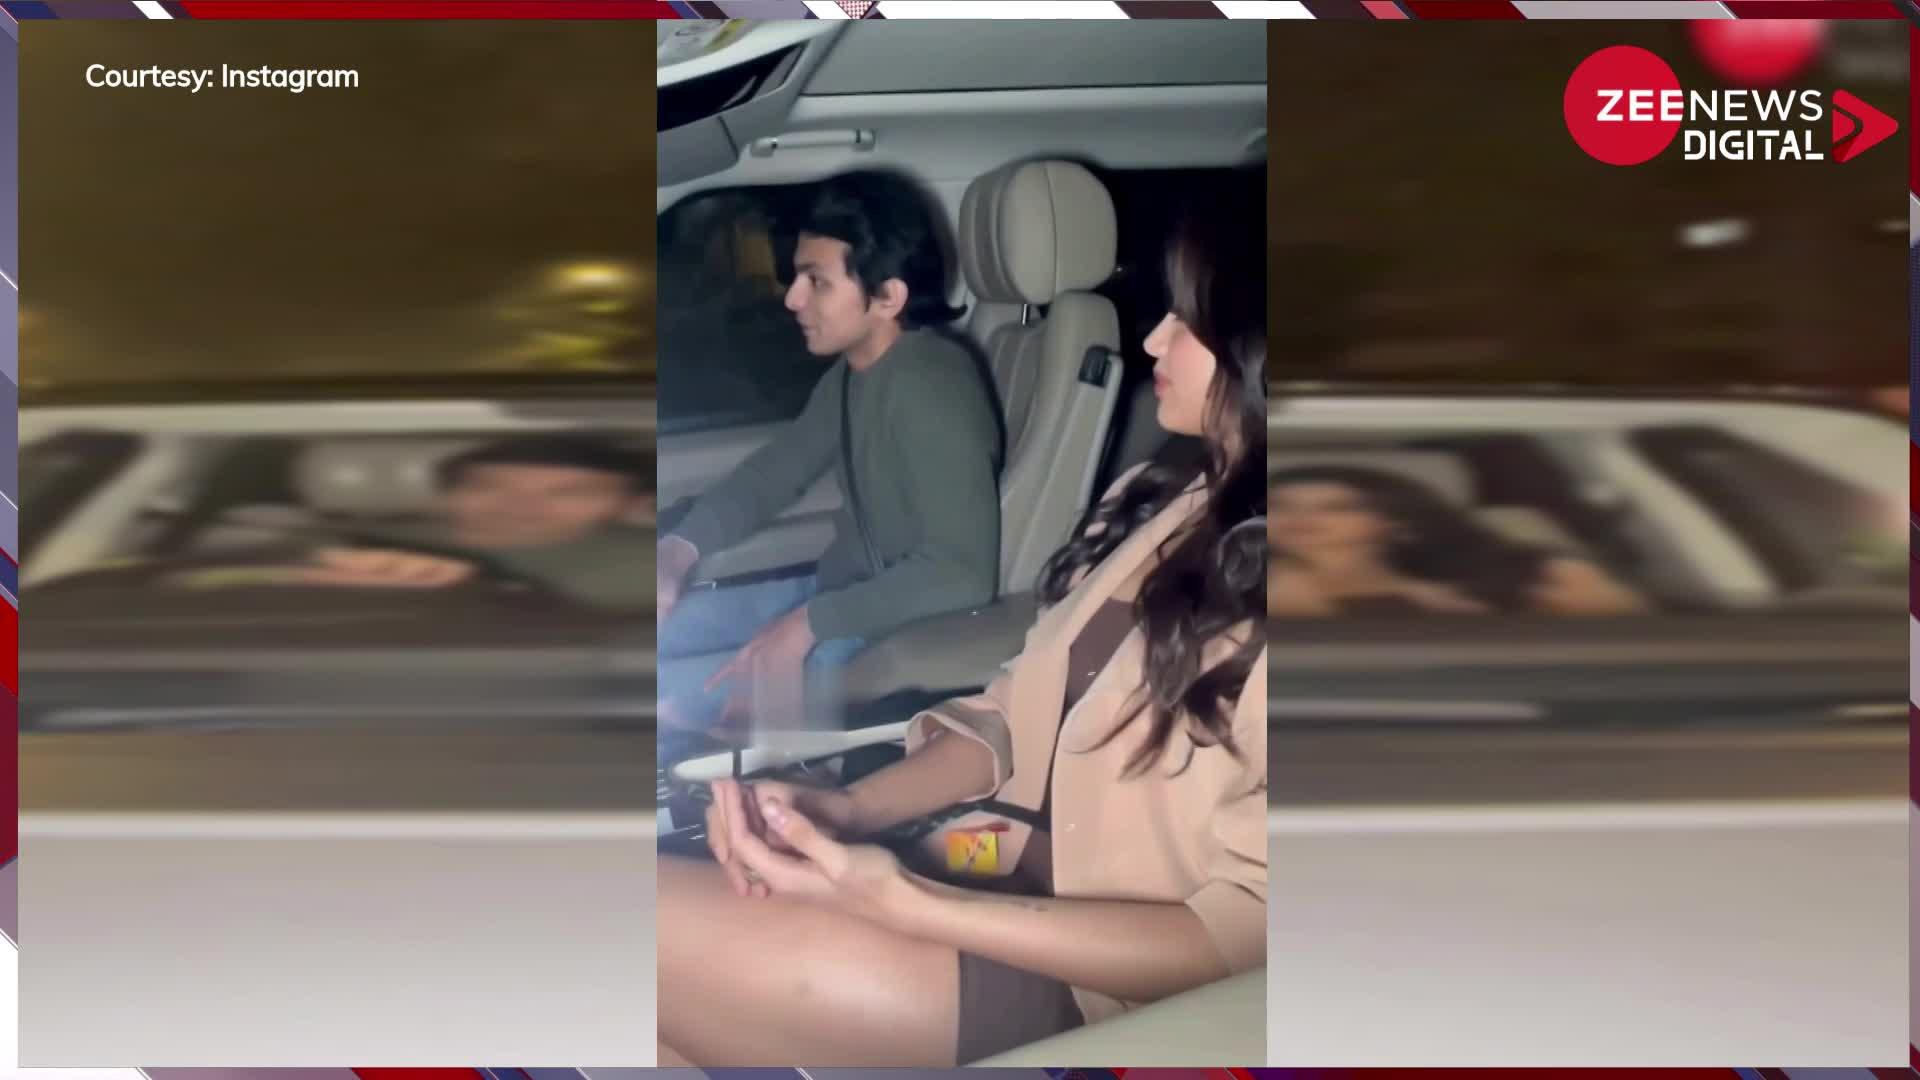 बॉयफ्रेंड शिखर पहाड़िया के साथ गाड़ी में थी Jhanvi Kapoor, कैमरा देखकर हो गईं शर्म से लाल